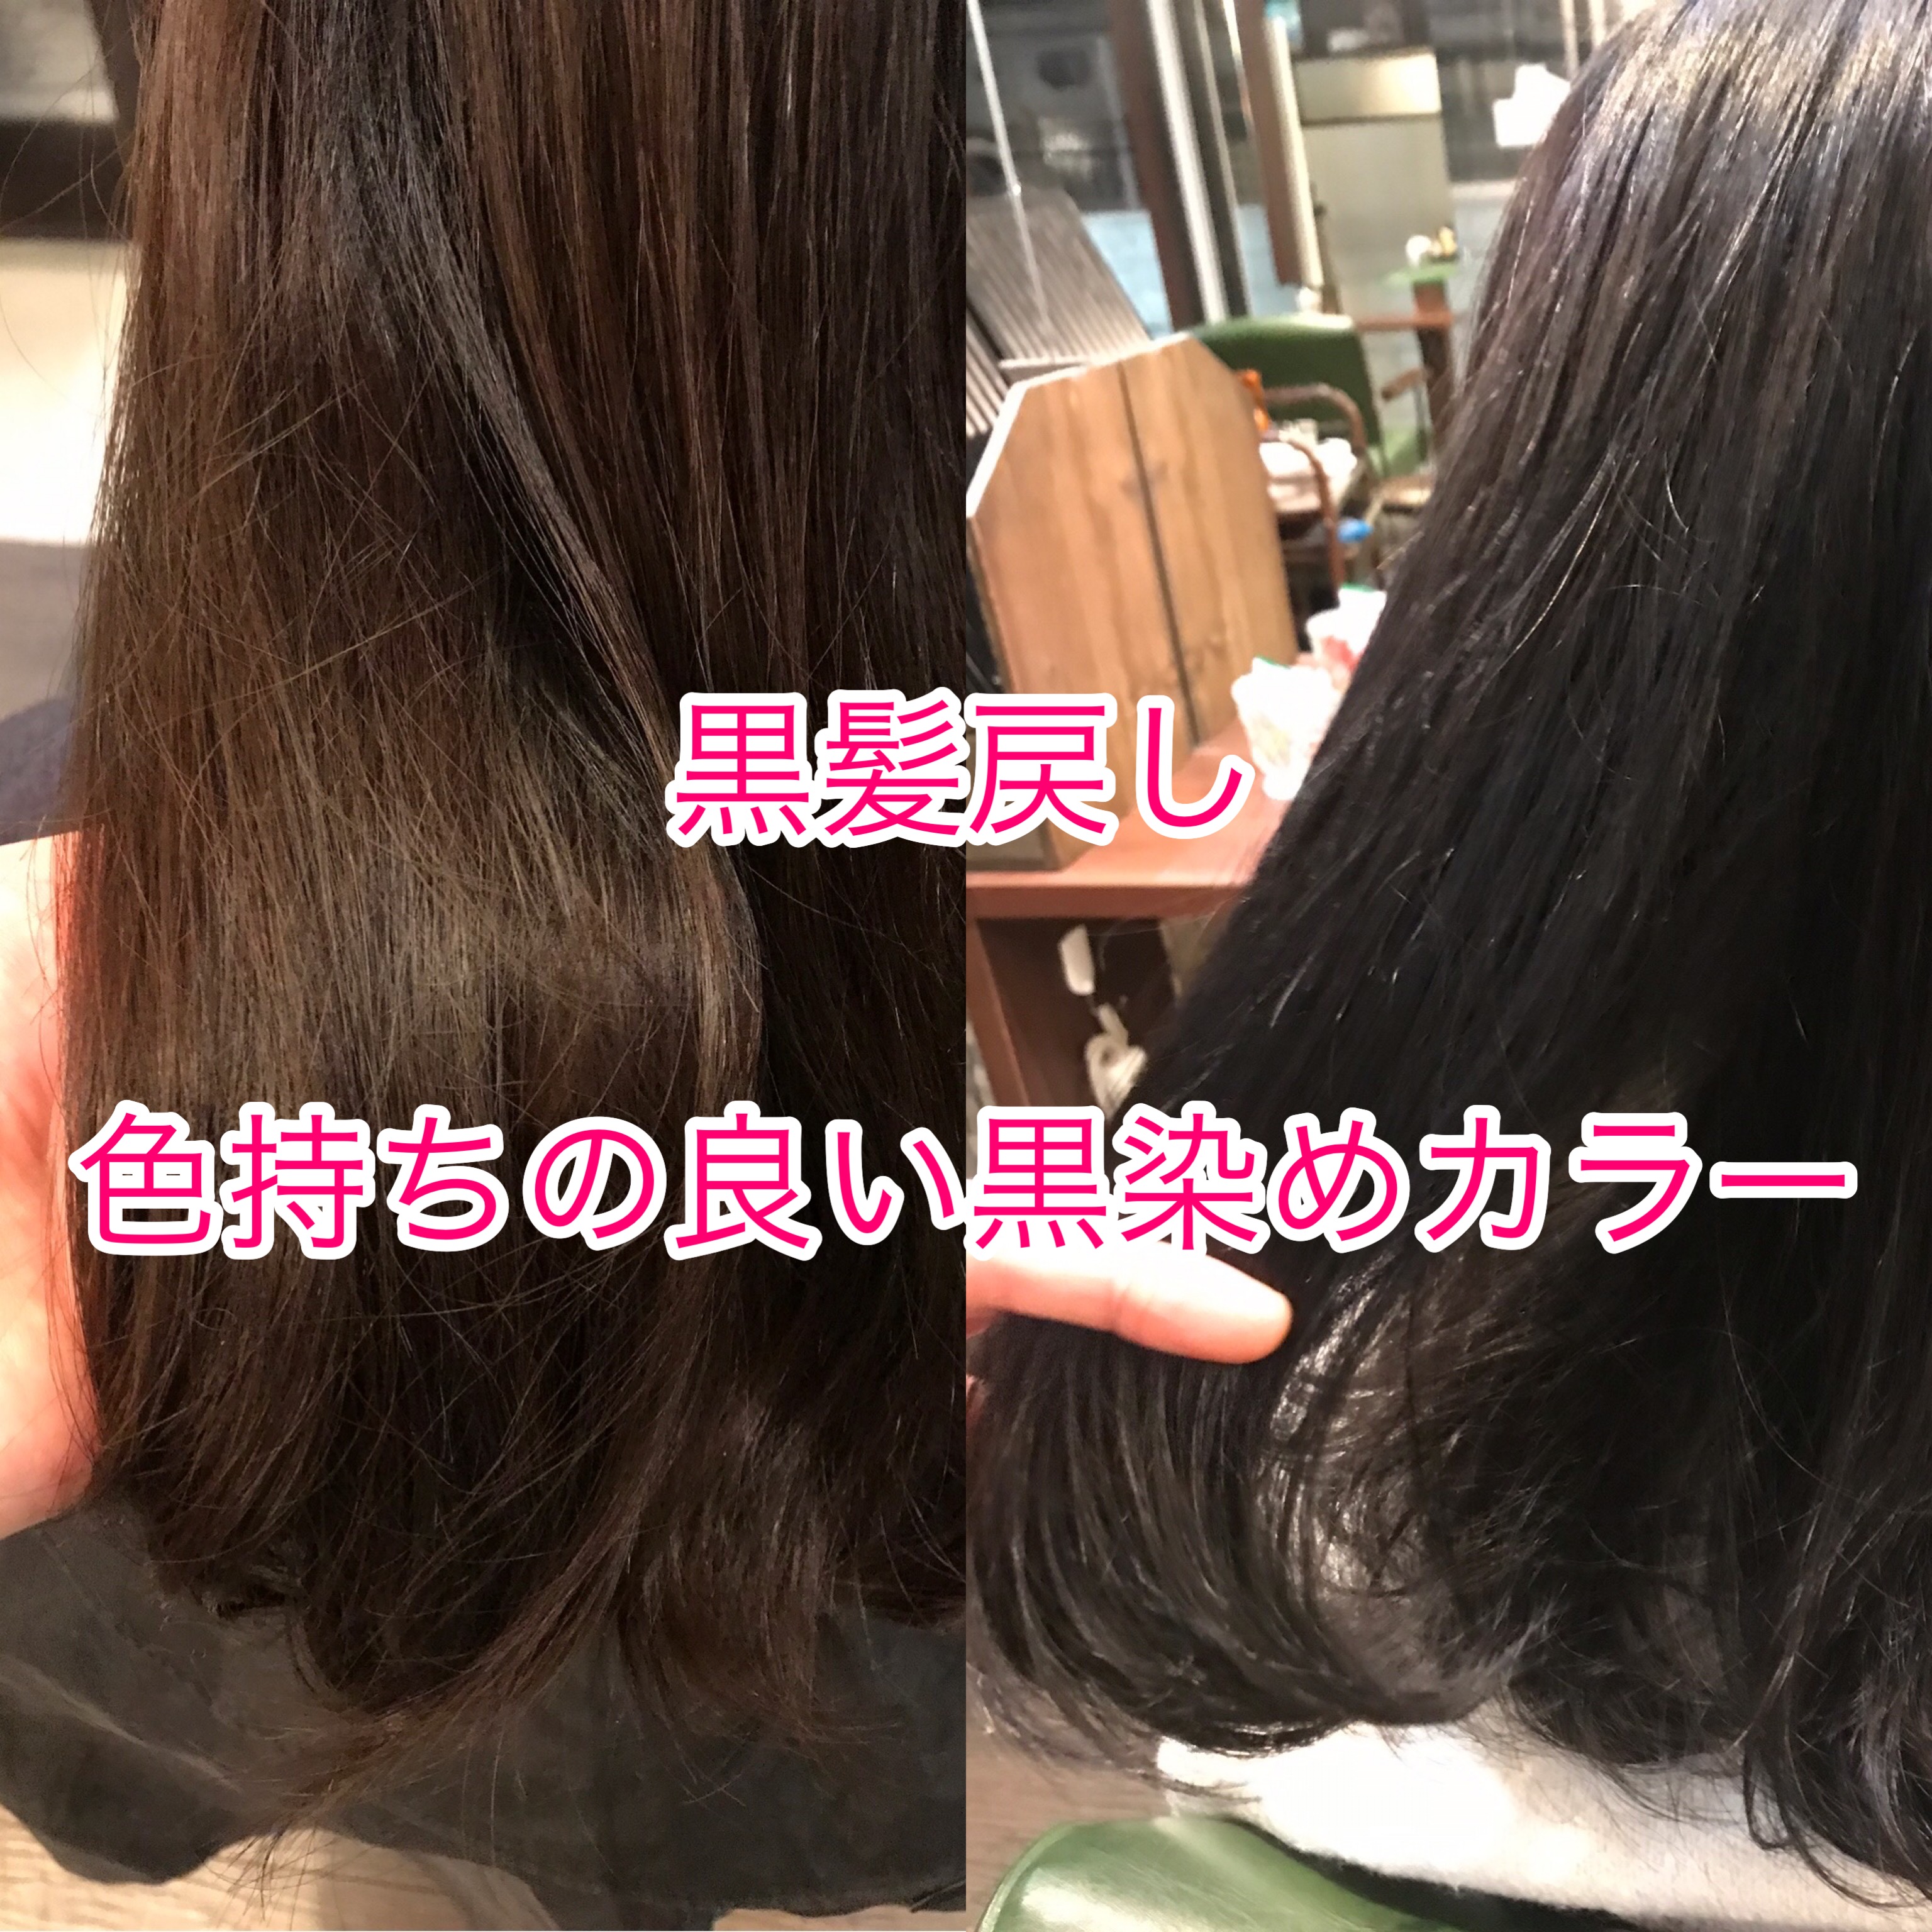 綺麗な地毛に戻していきたい方へおすすめ 色持ちの良い黒髪戻しヘアカラー Shota Sato Net